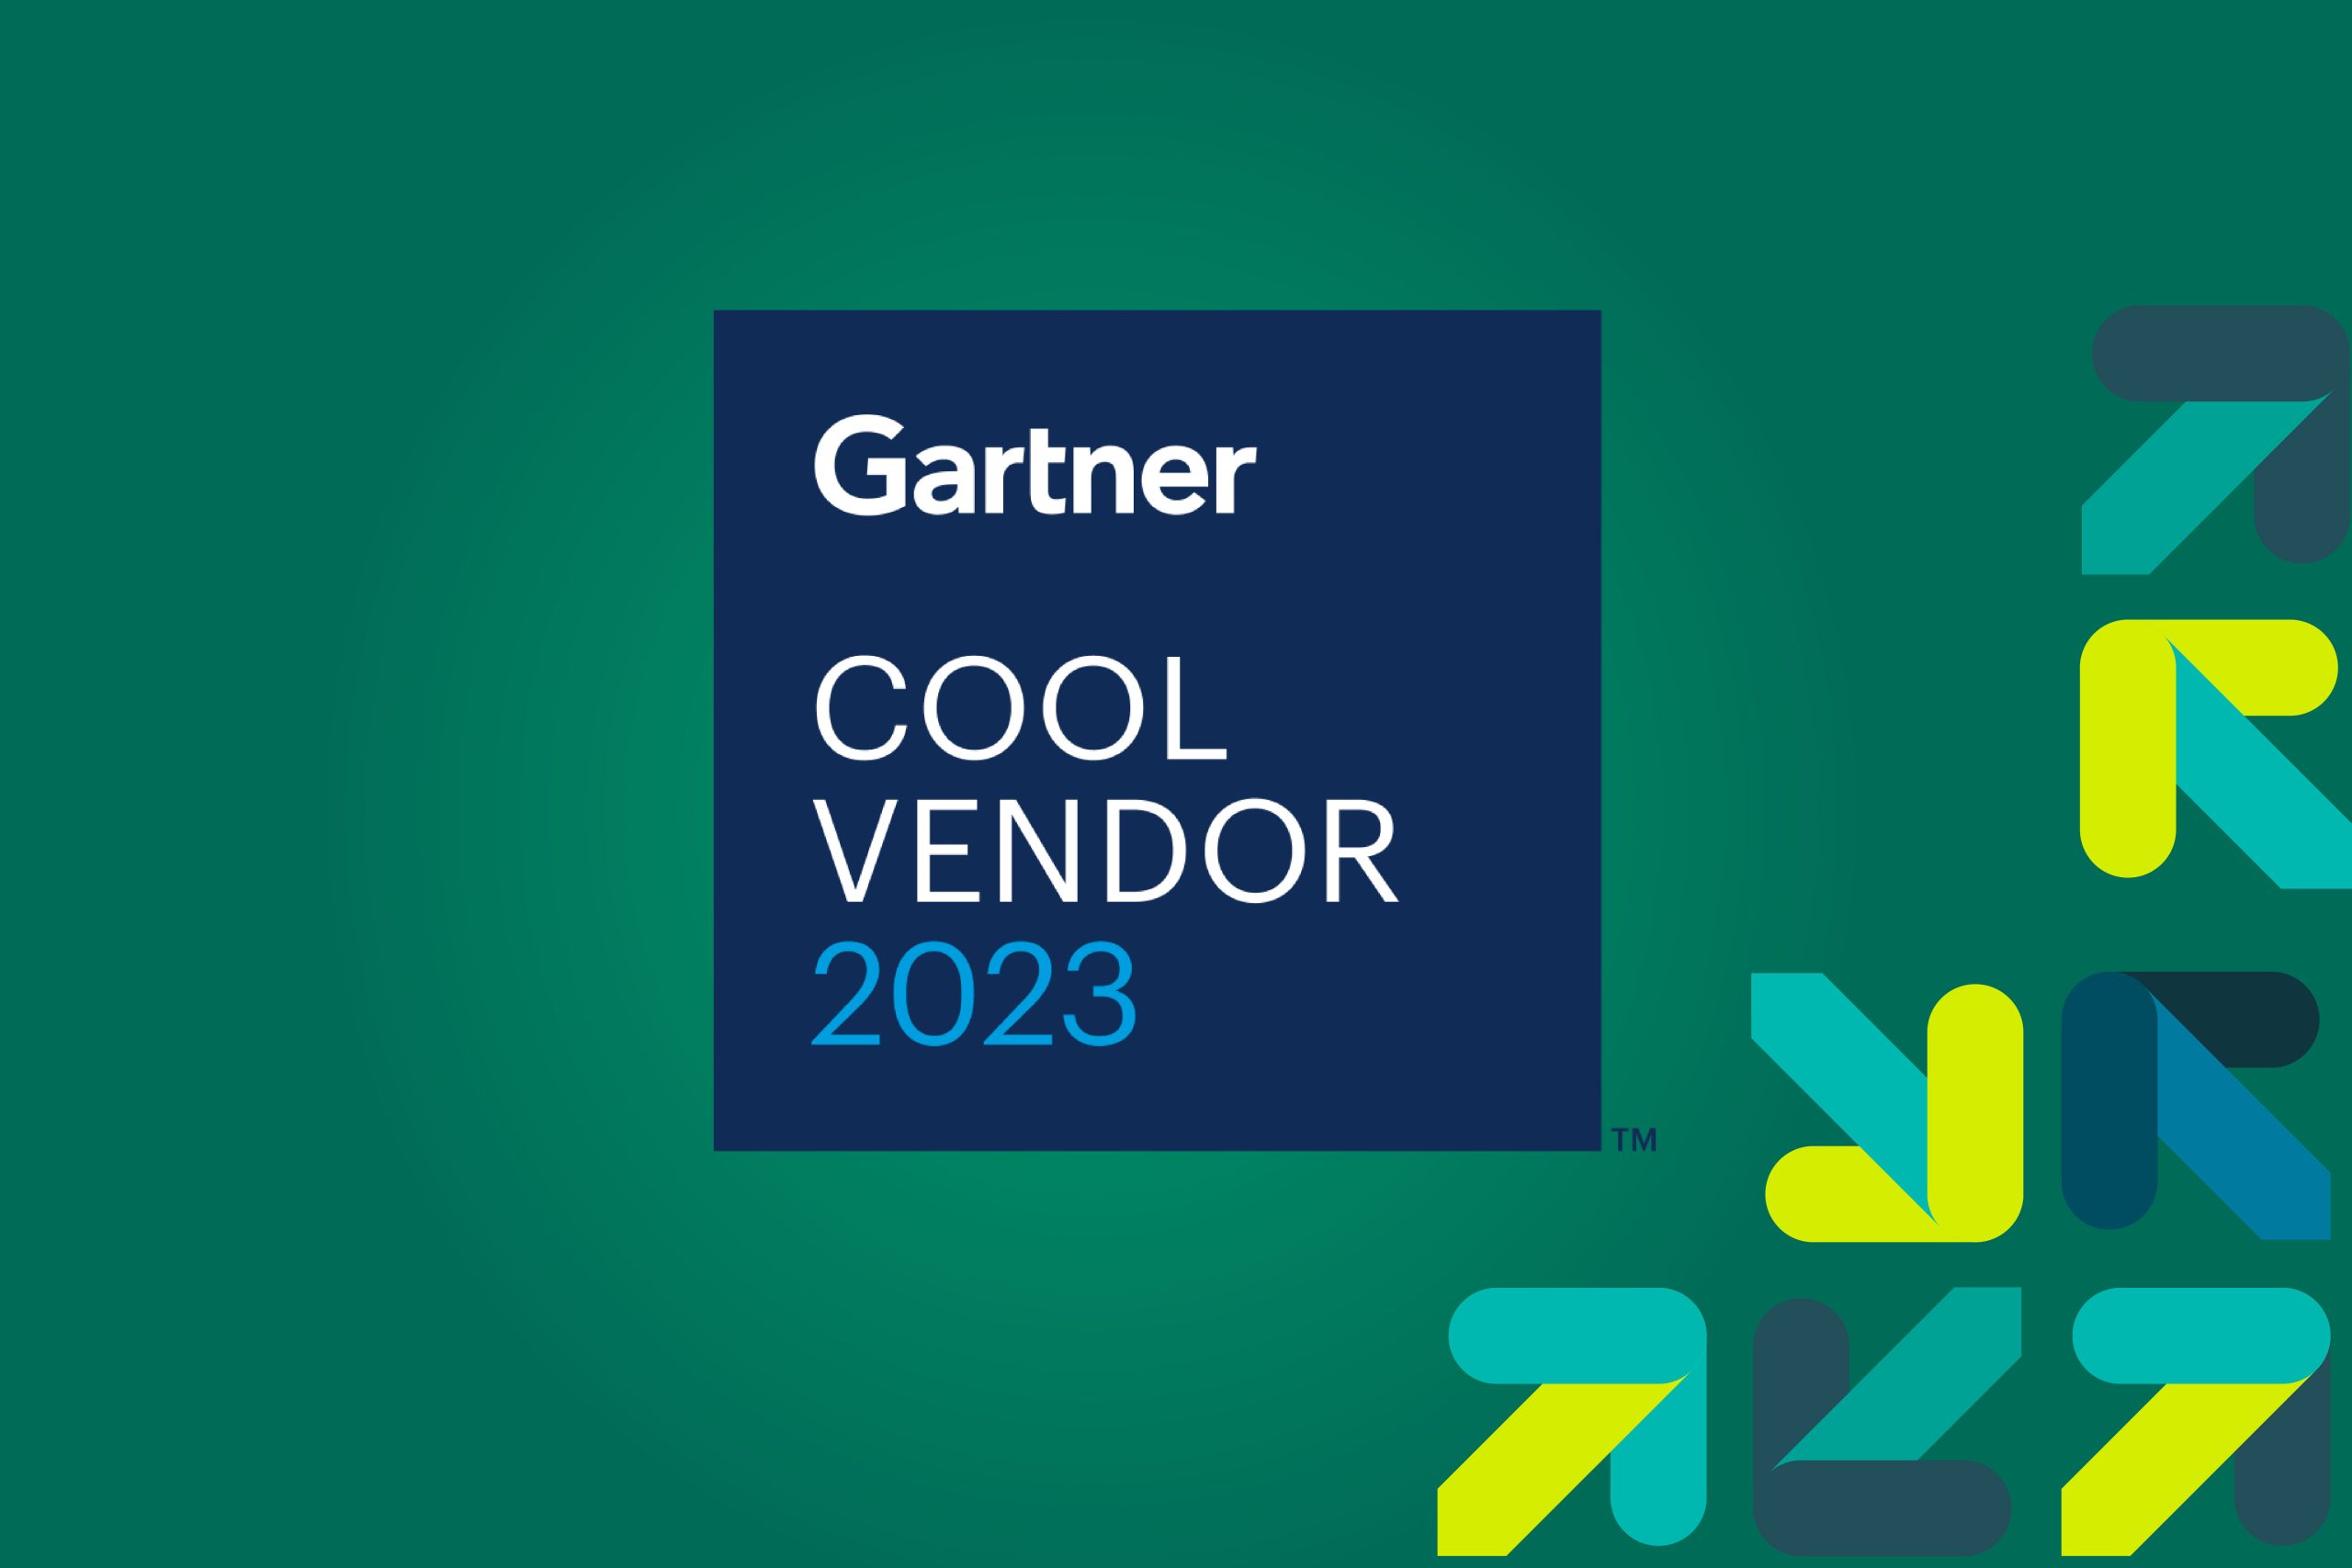 Gartner Cool Vendor 2023 logo on a green background.